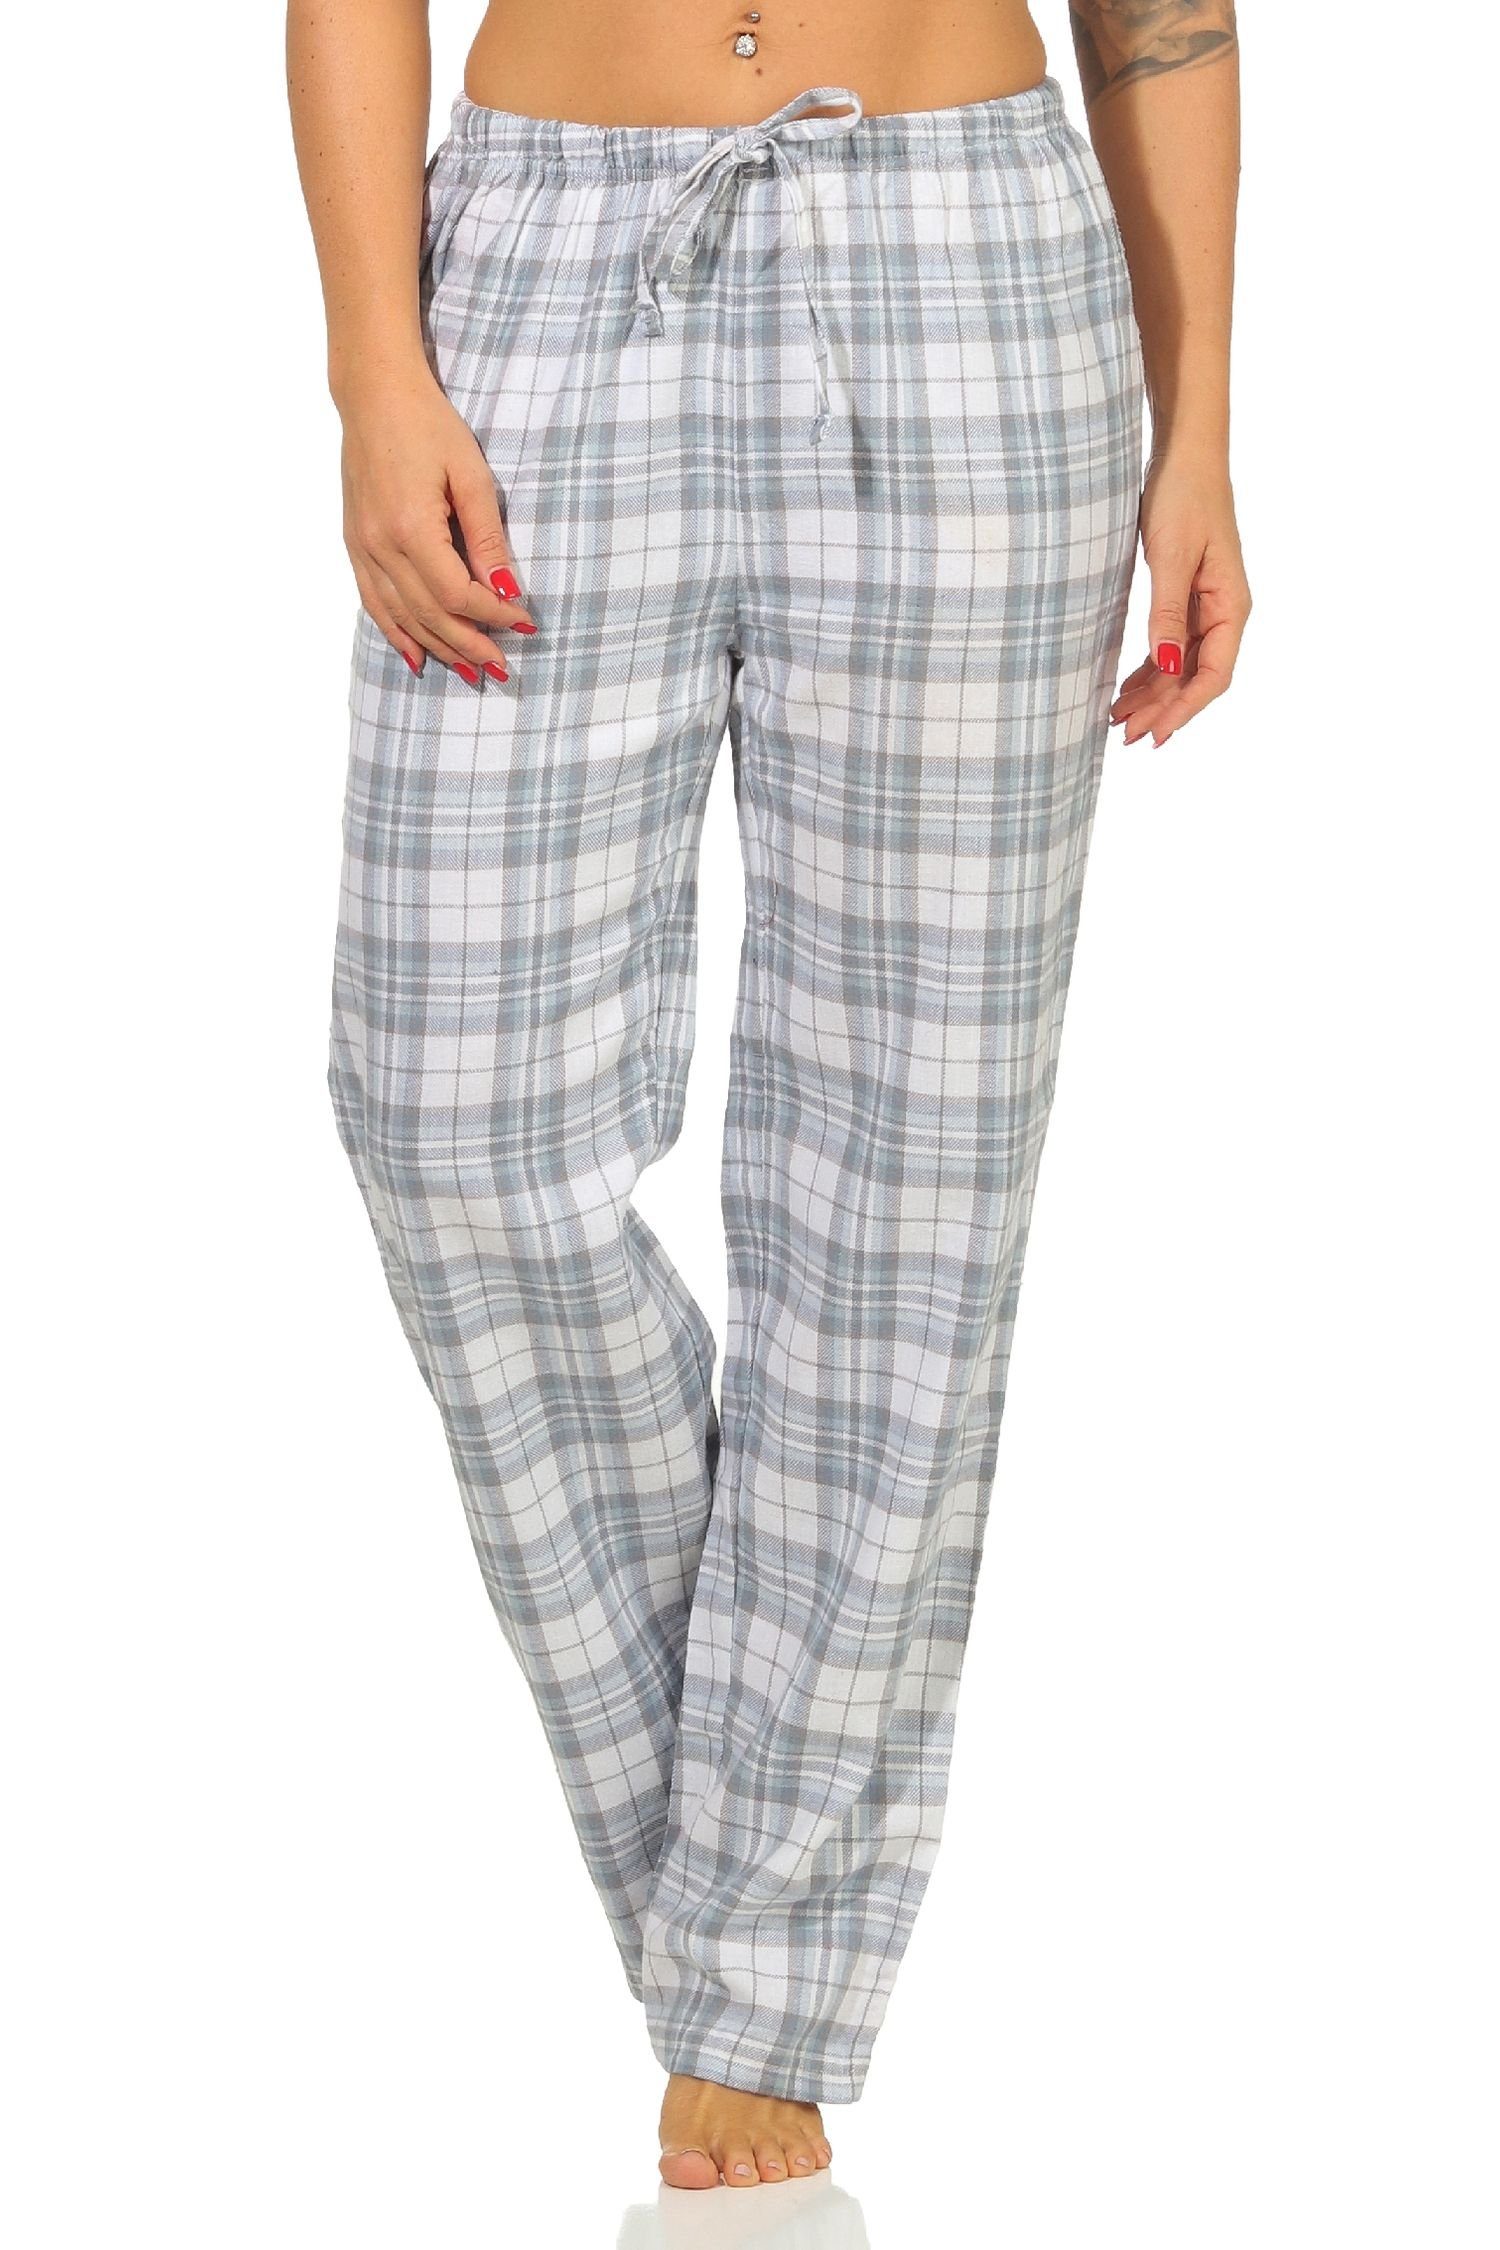 Normann Pyjama Dame Flanell Schlafanzug Hose kariert aus Baumwolle ideal zum relaxen Karo blau